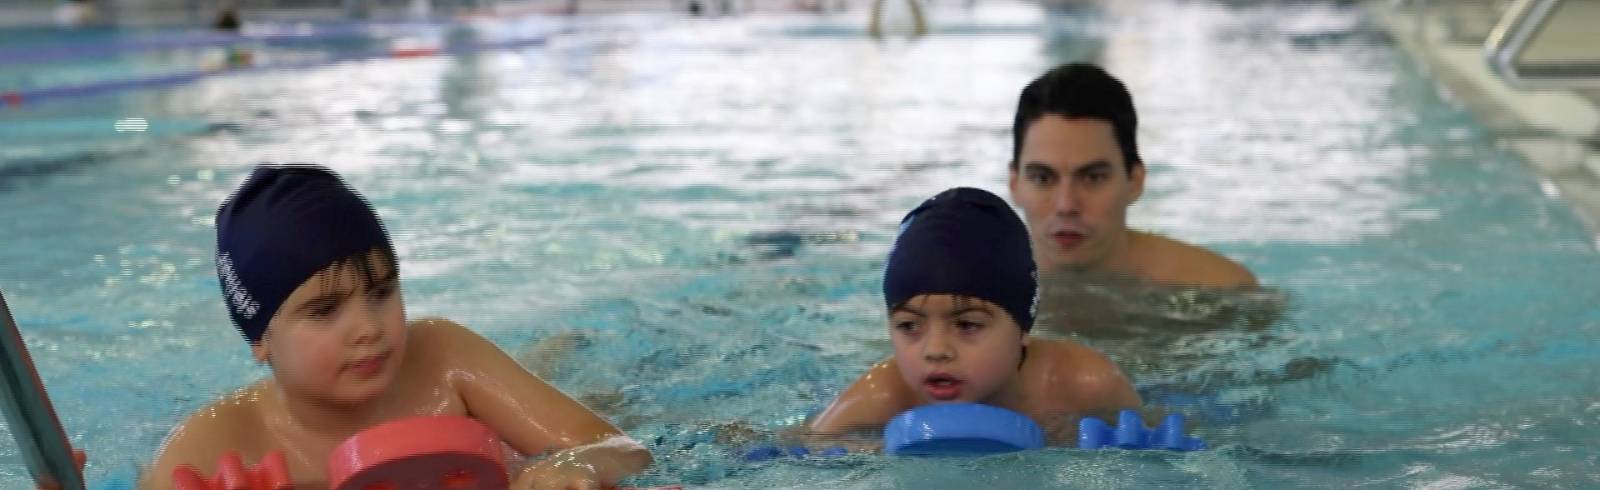 Schwimmkurse können Kinderleben retten